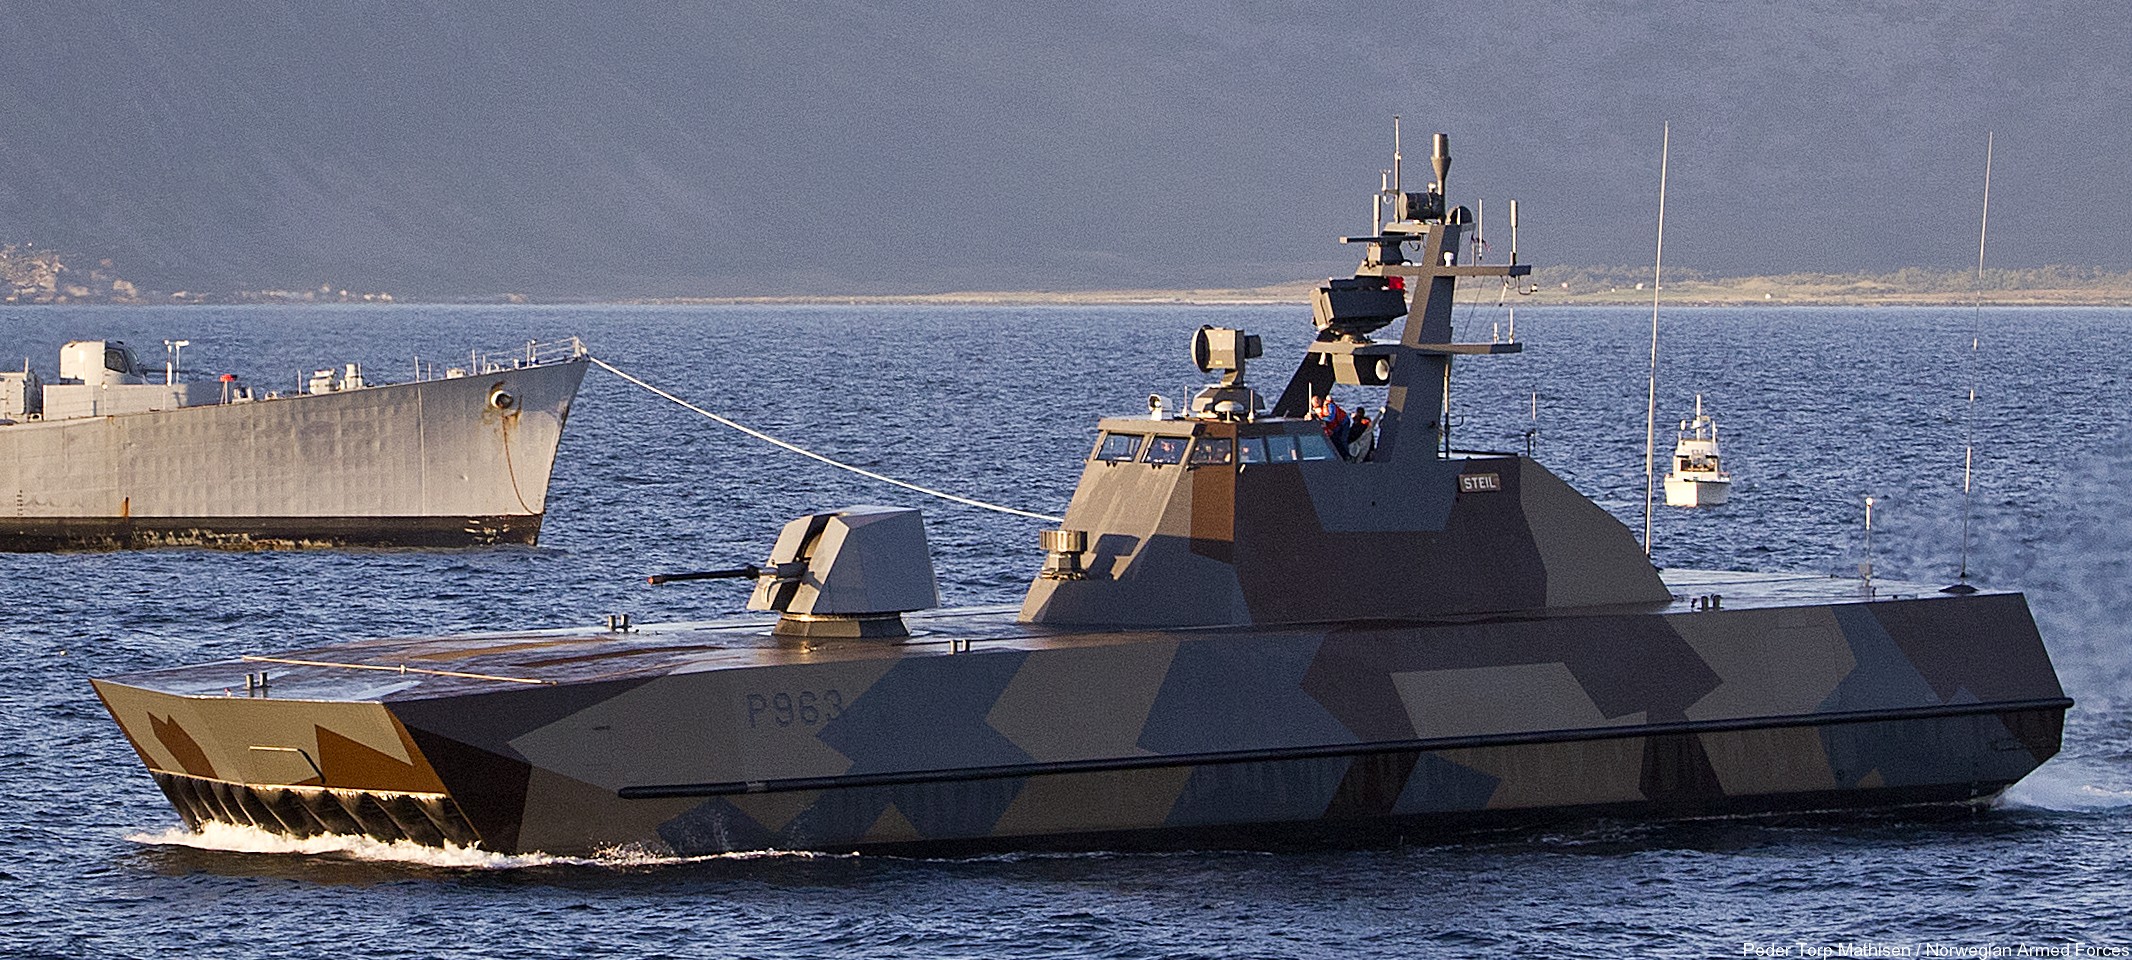 p-963 steil knm hnoms skjold class corvette royal norwegian navy sjoforsvaret 02